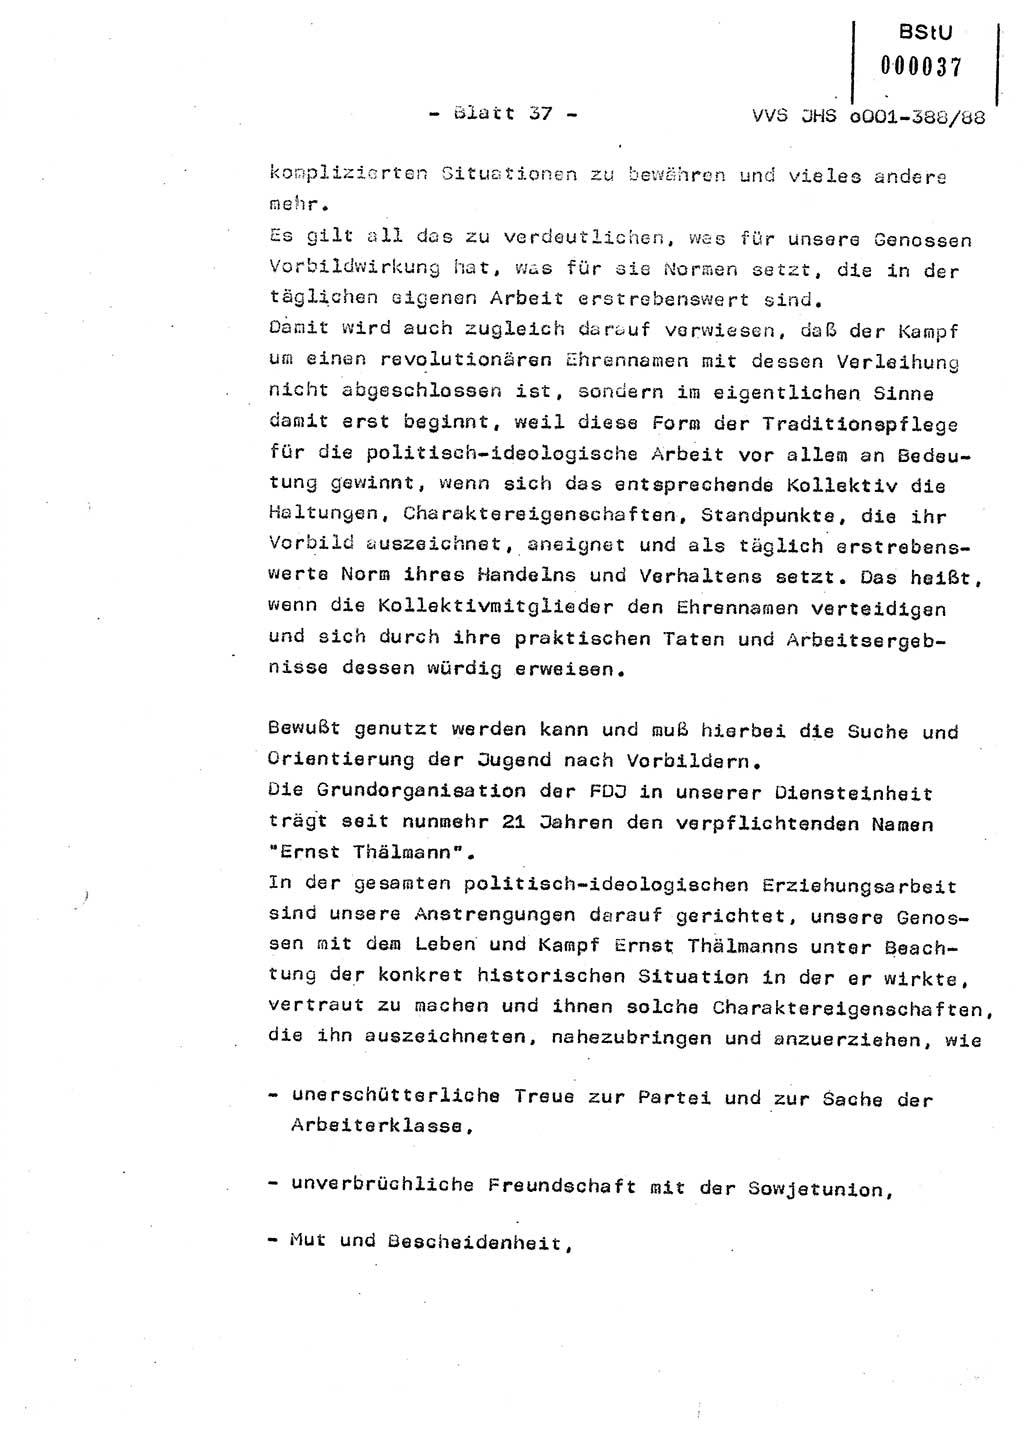 Diplomarbeit Hauptmann Heinz Brixel (Abt. ⅩⅣ), Ministerium für Staatssicherheit (MfS) [Deutsche Demokratische Republik (DDR)], Juristische Hochschule (JHS), Vertrauliche Verschlußsache (VVS) o001-388/88, Potsdam 1988, Blatt 37 (Dipl.-Arb. MfS DDR JHS VVS o001-388/88 1988, Bl. 37)